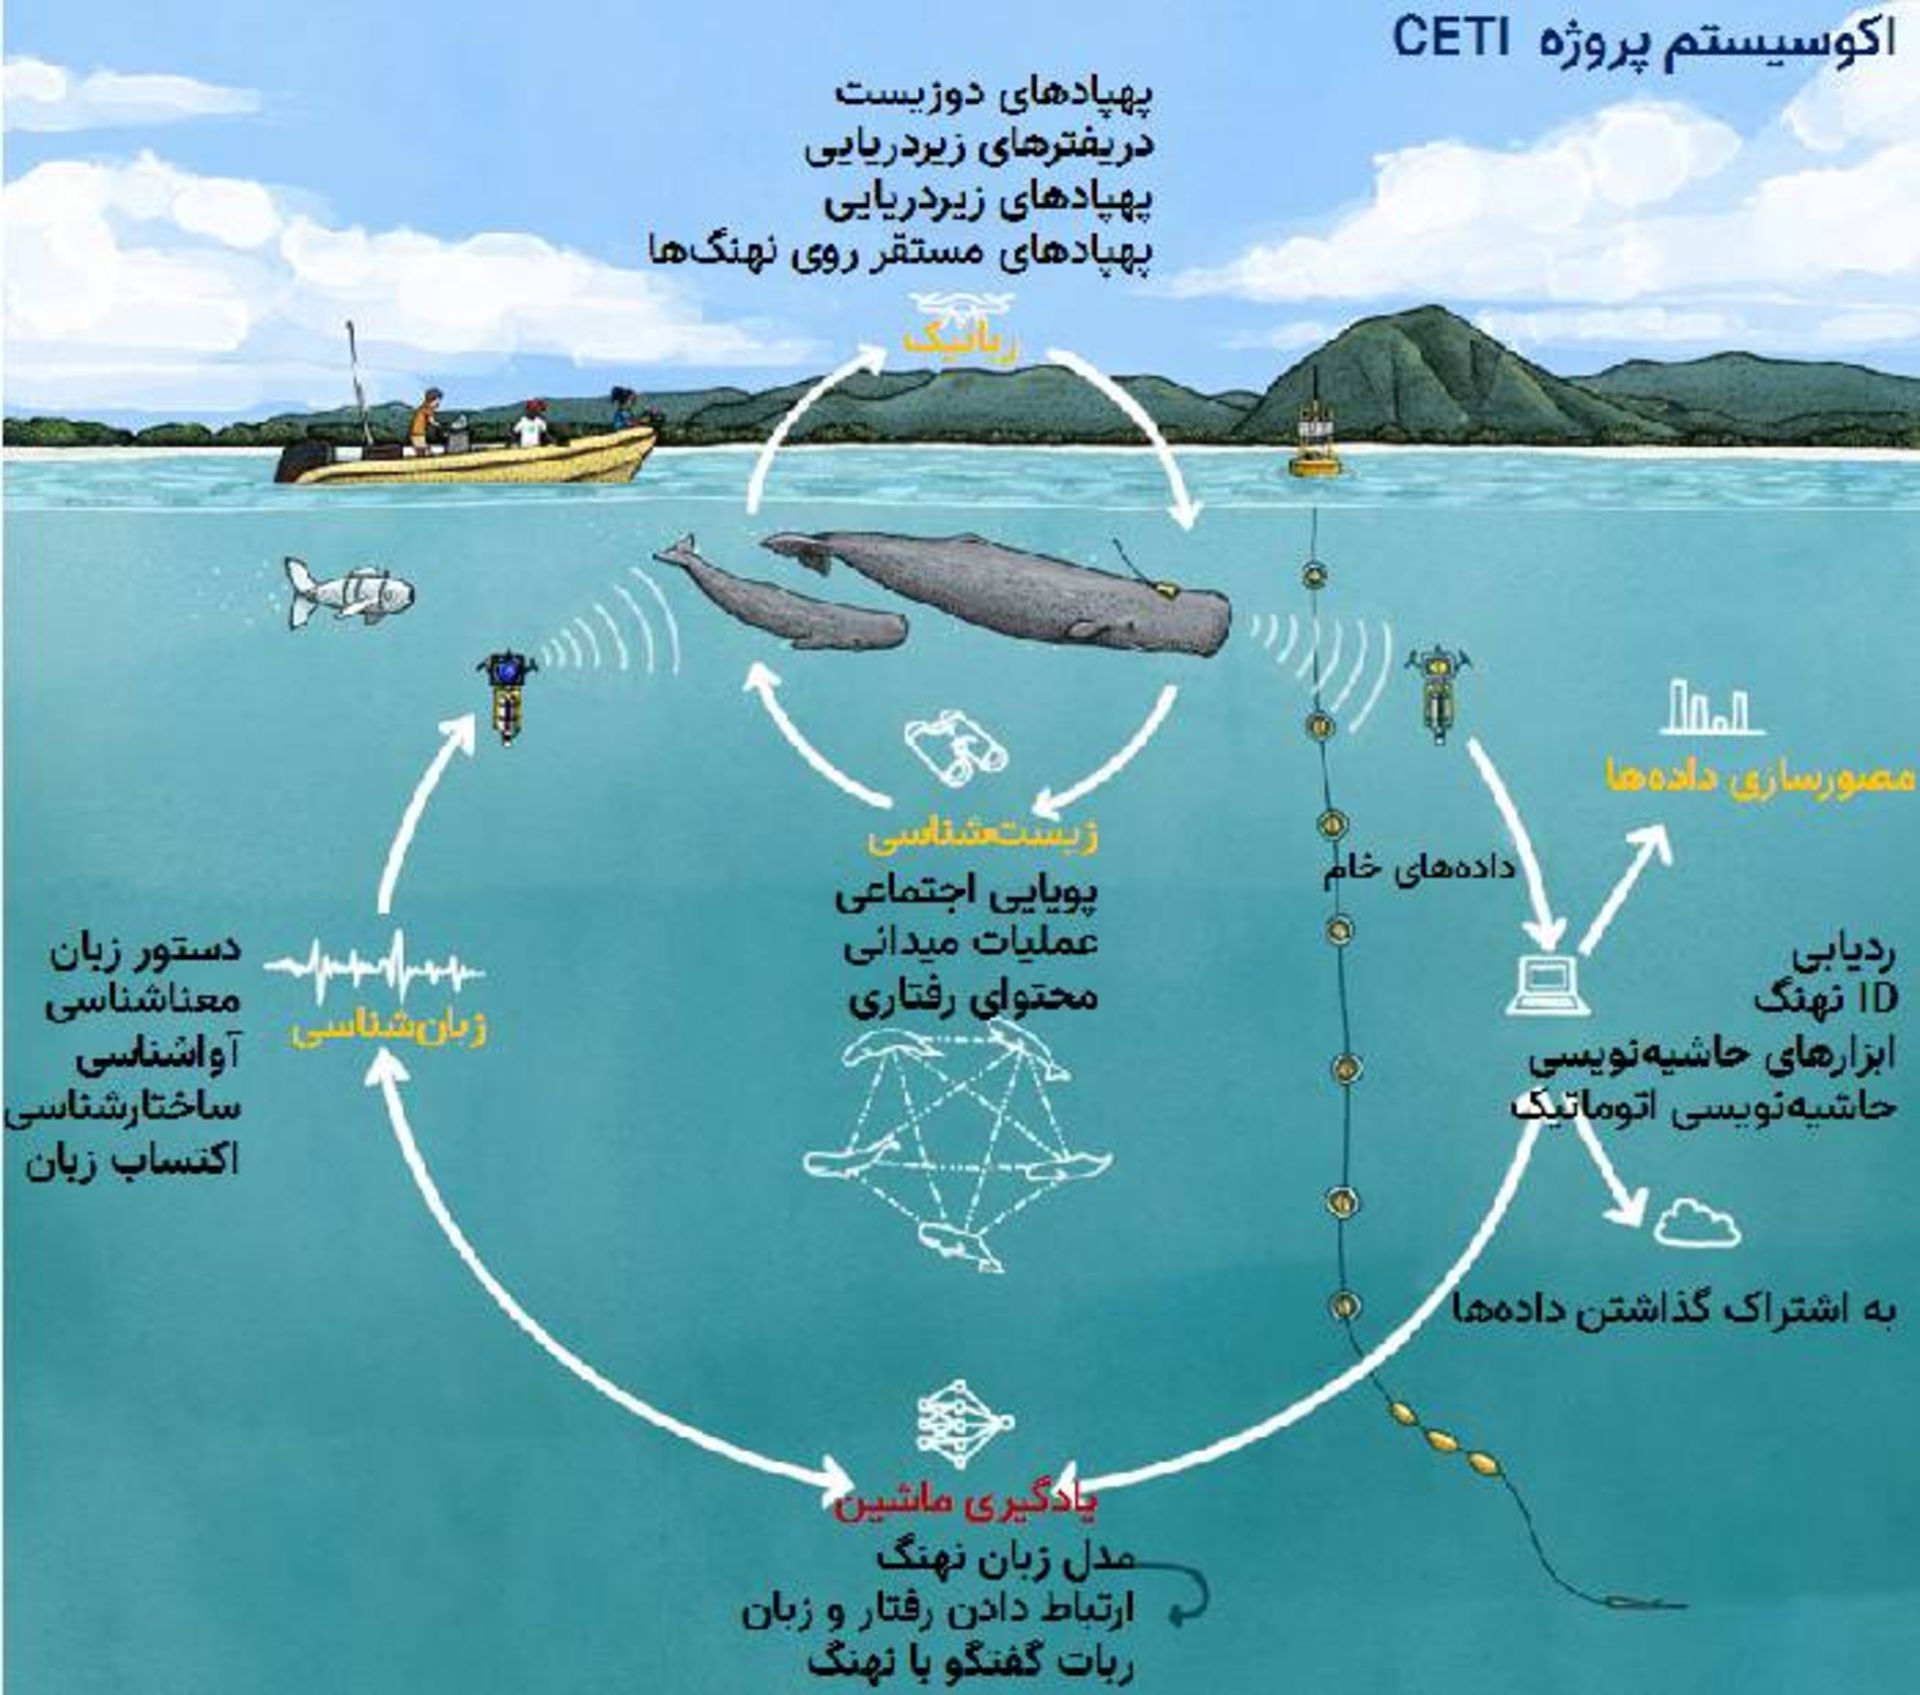 پروژه رمزگشایی از ارتباطات صوتی میان نهنگ های عنبر